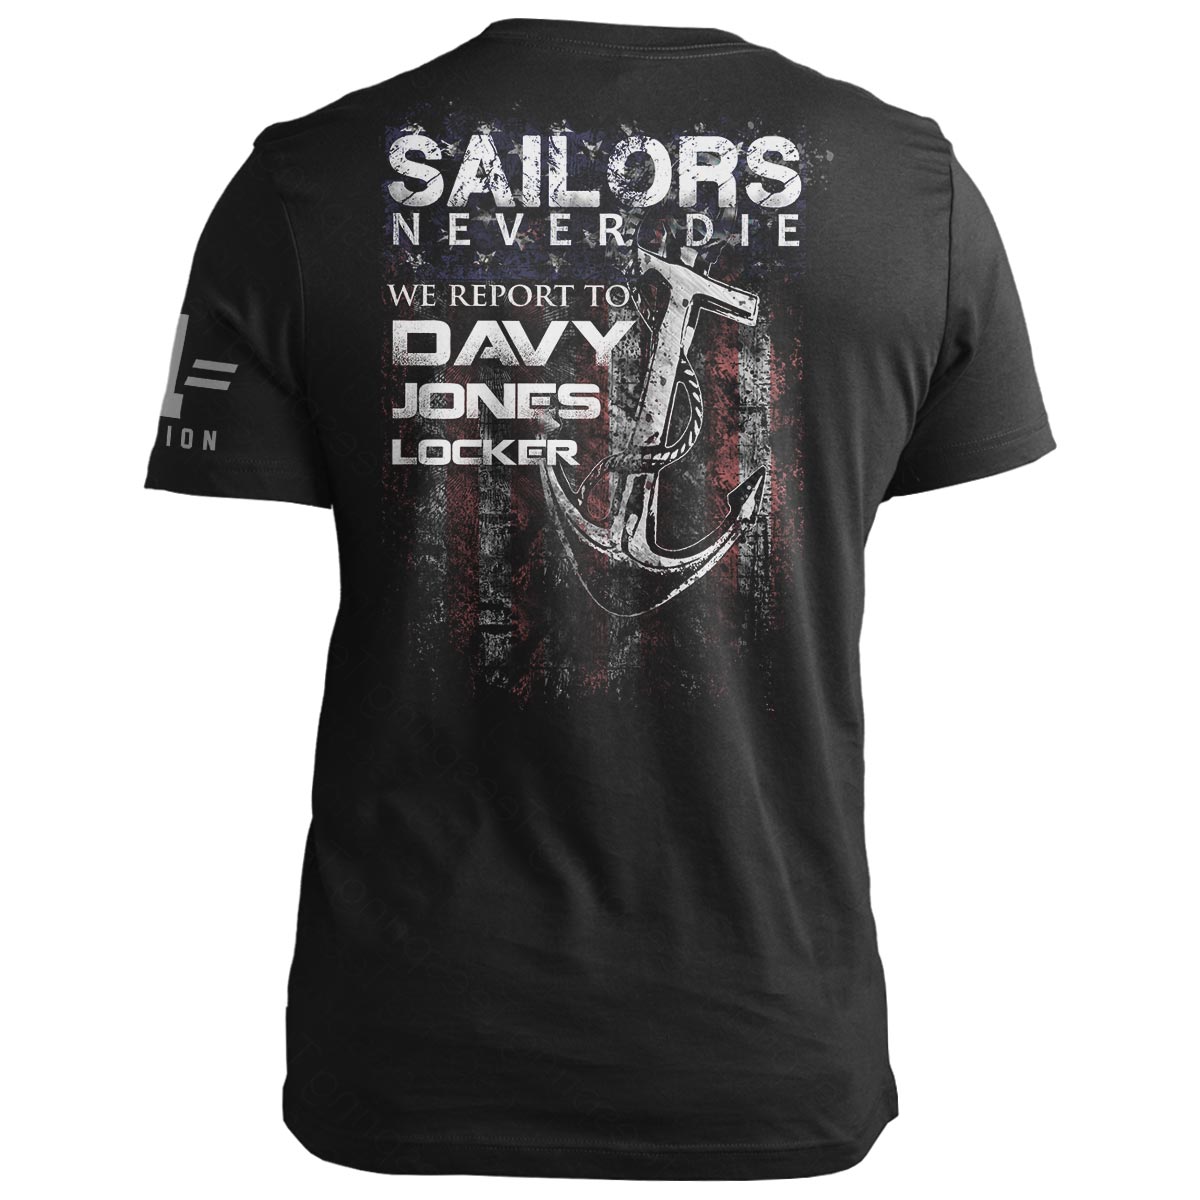 Sailors Never Die...